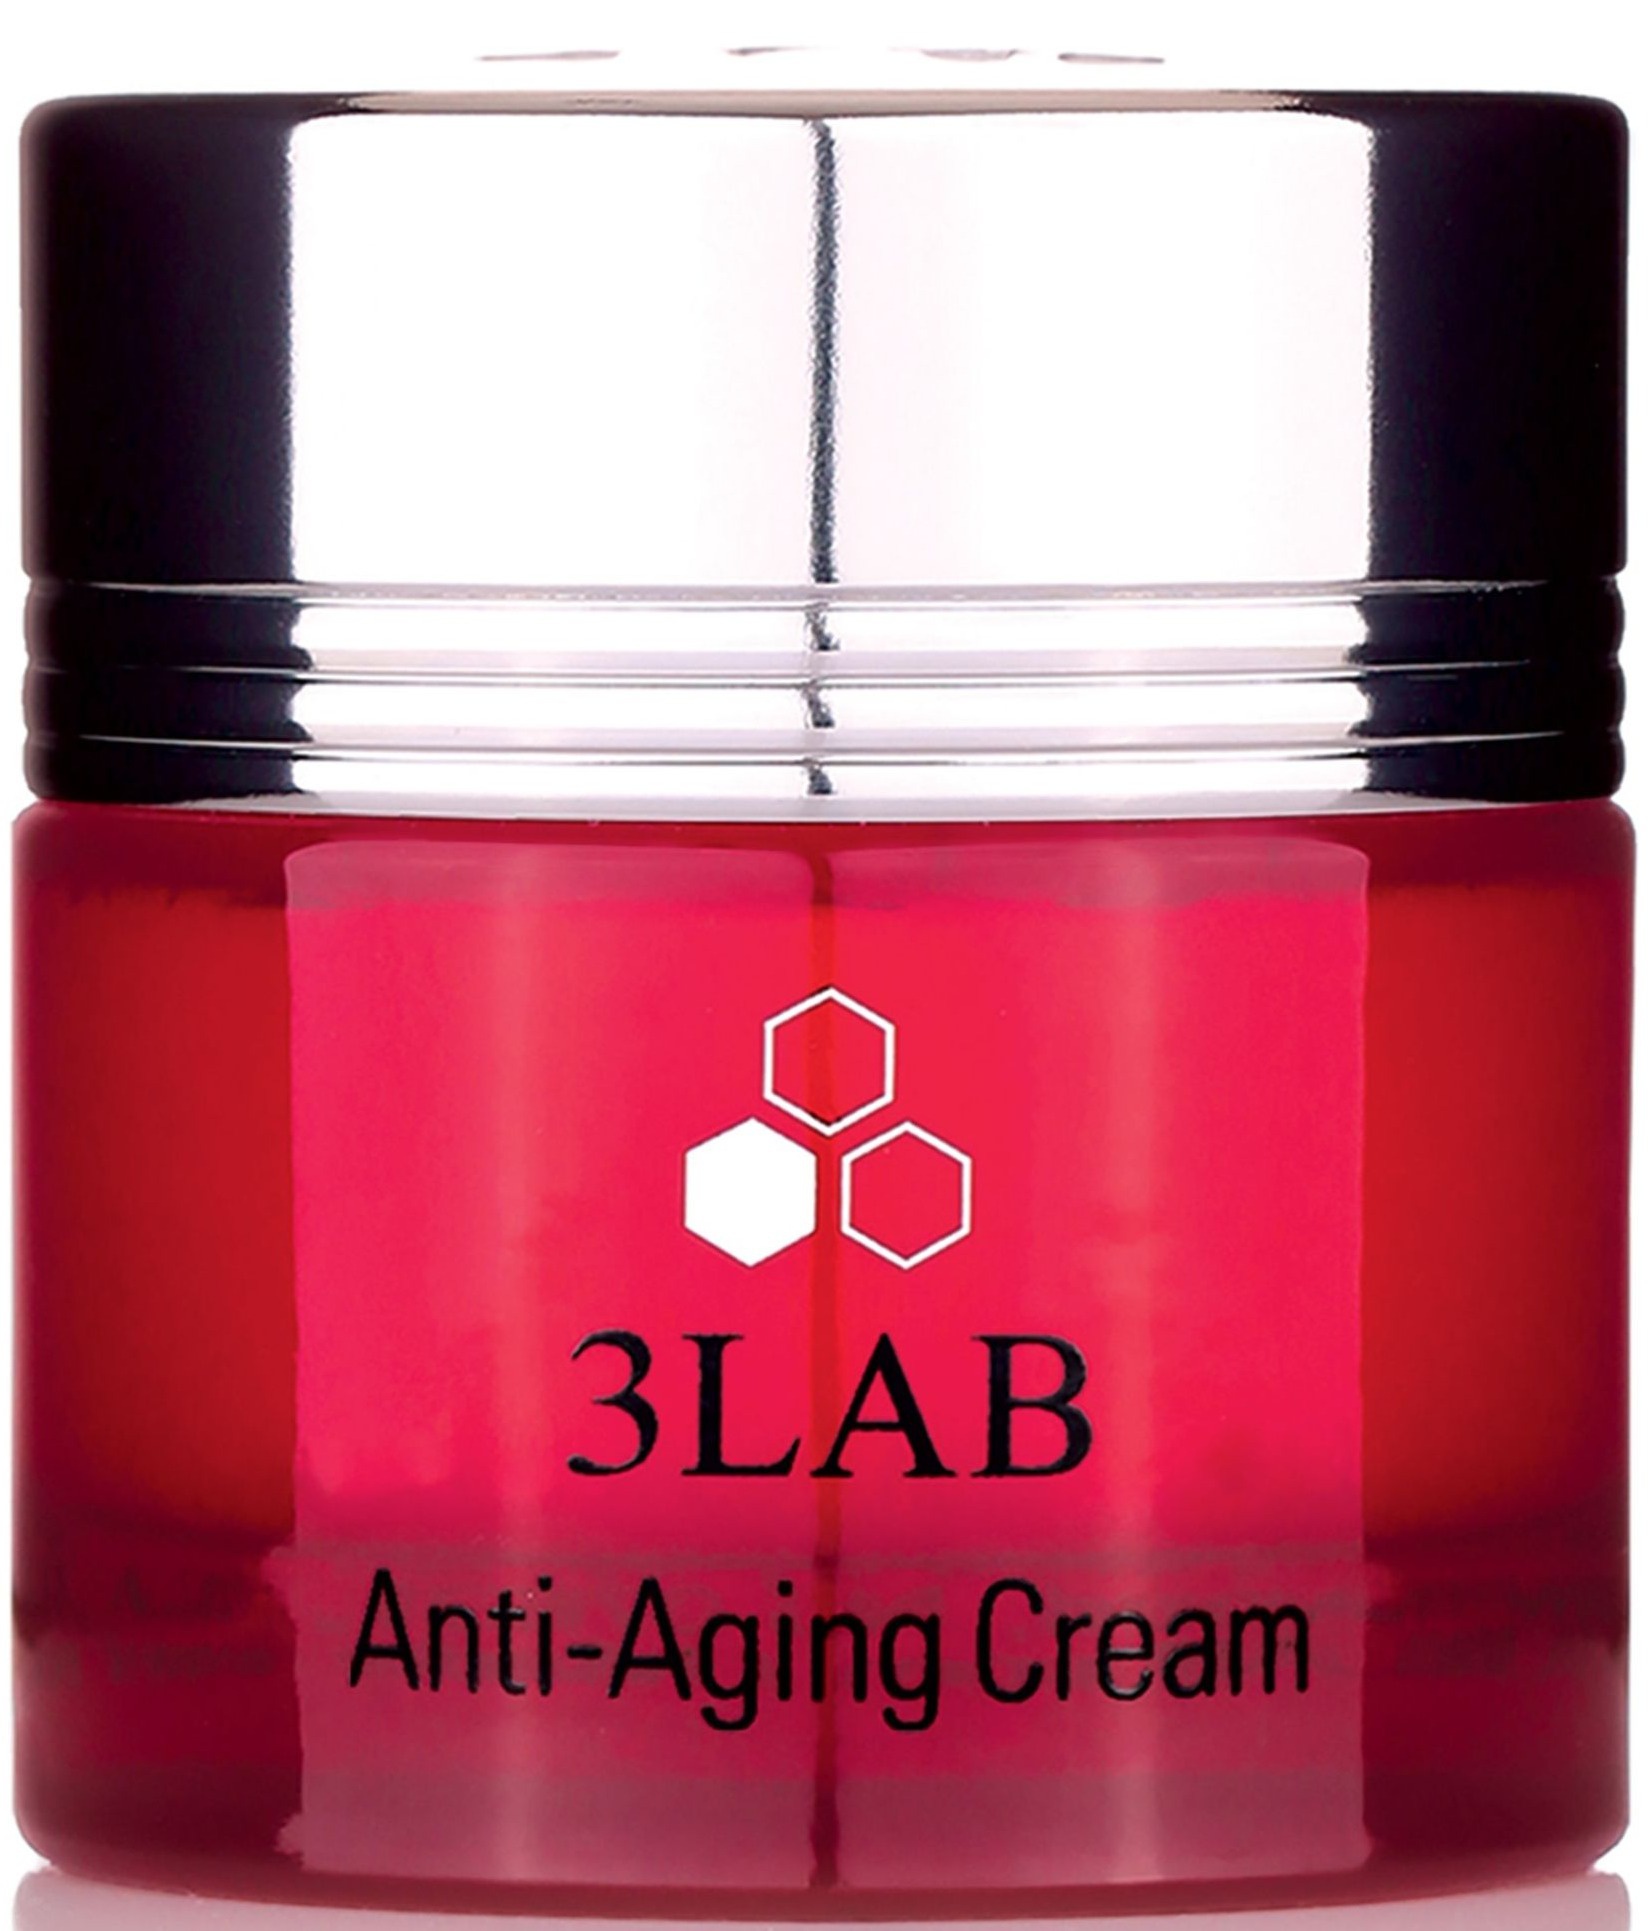 3LAB Anti-aging Cream